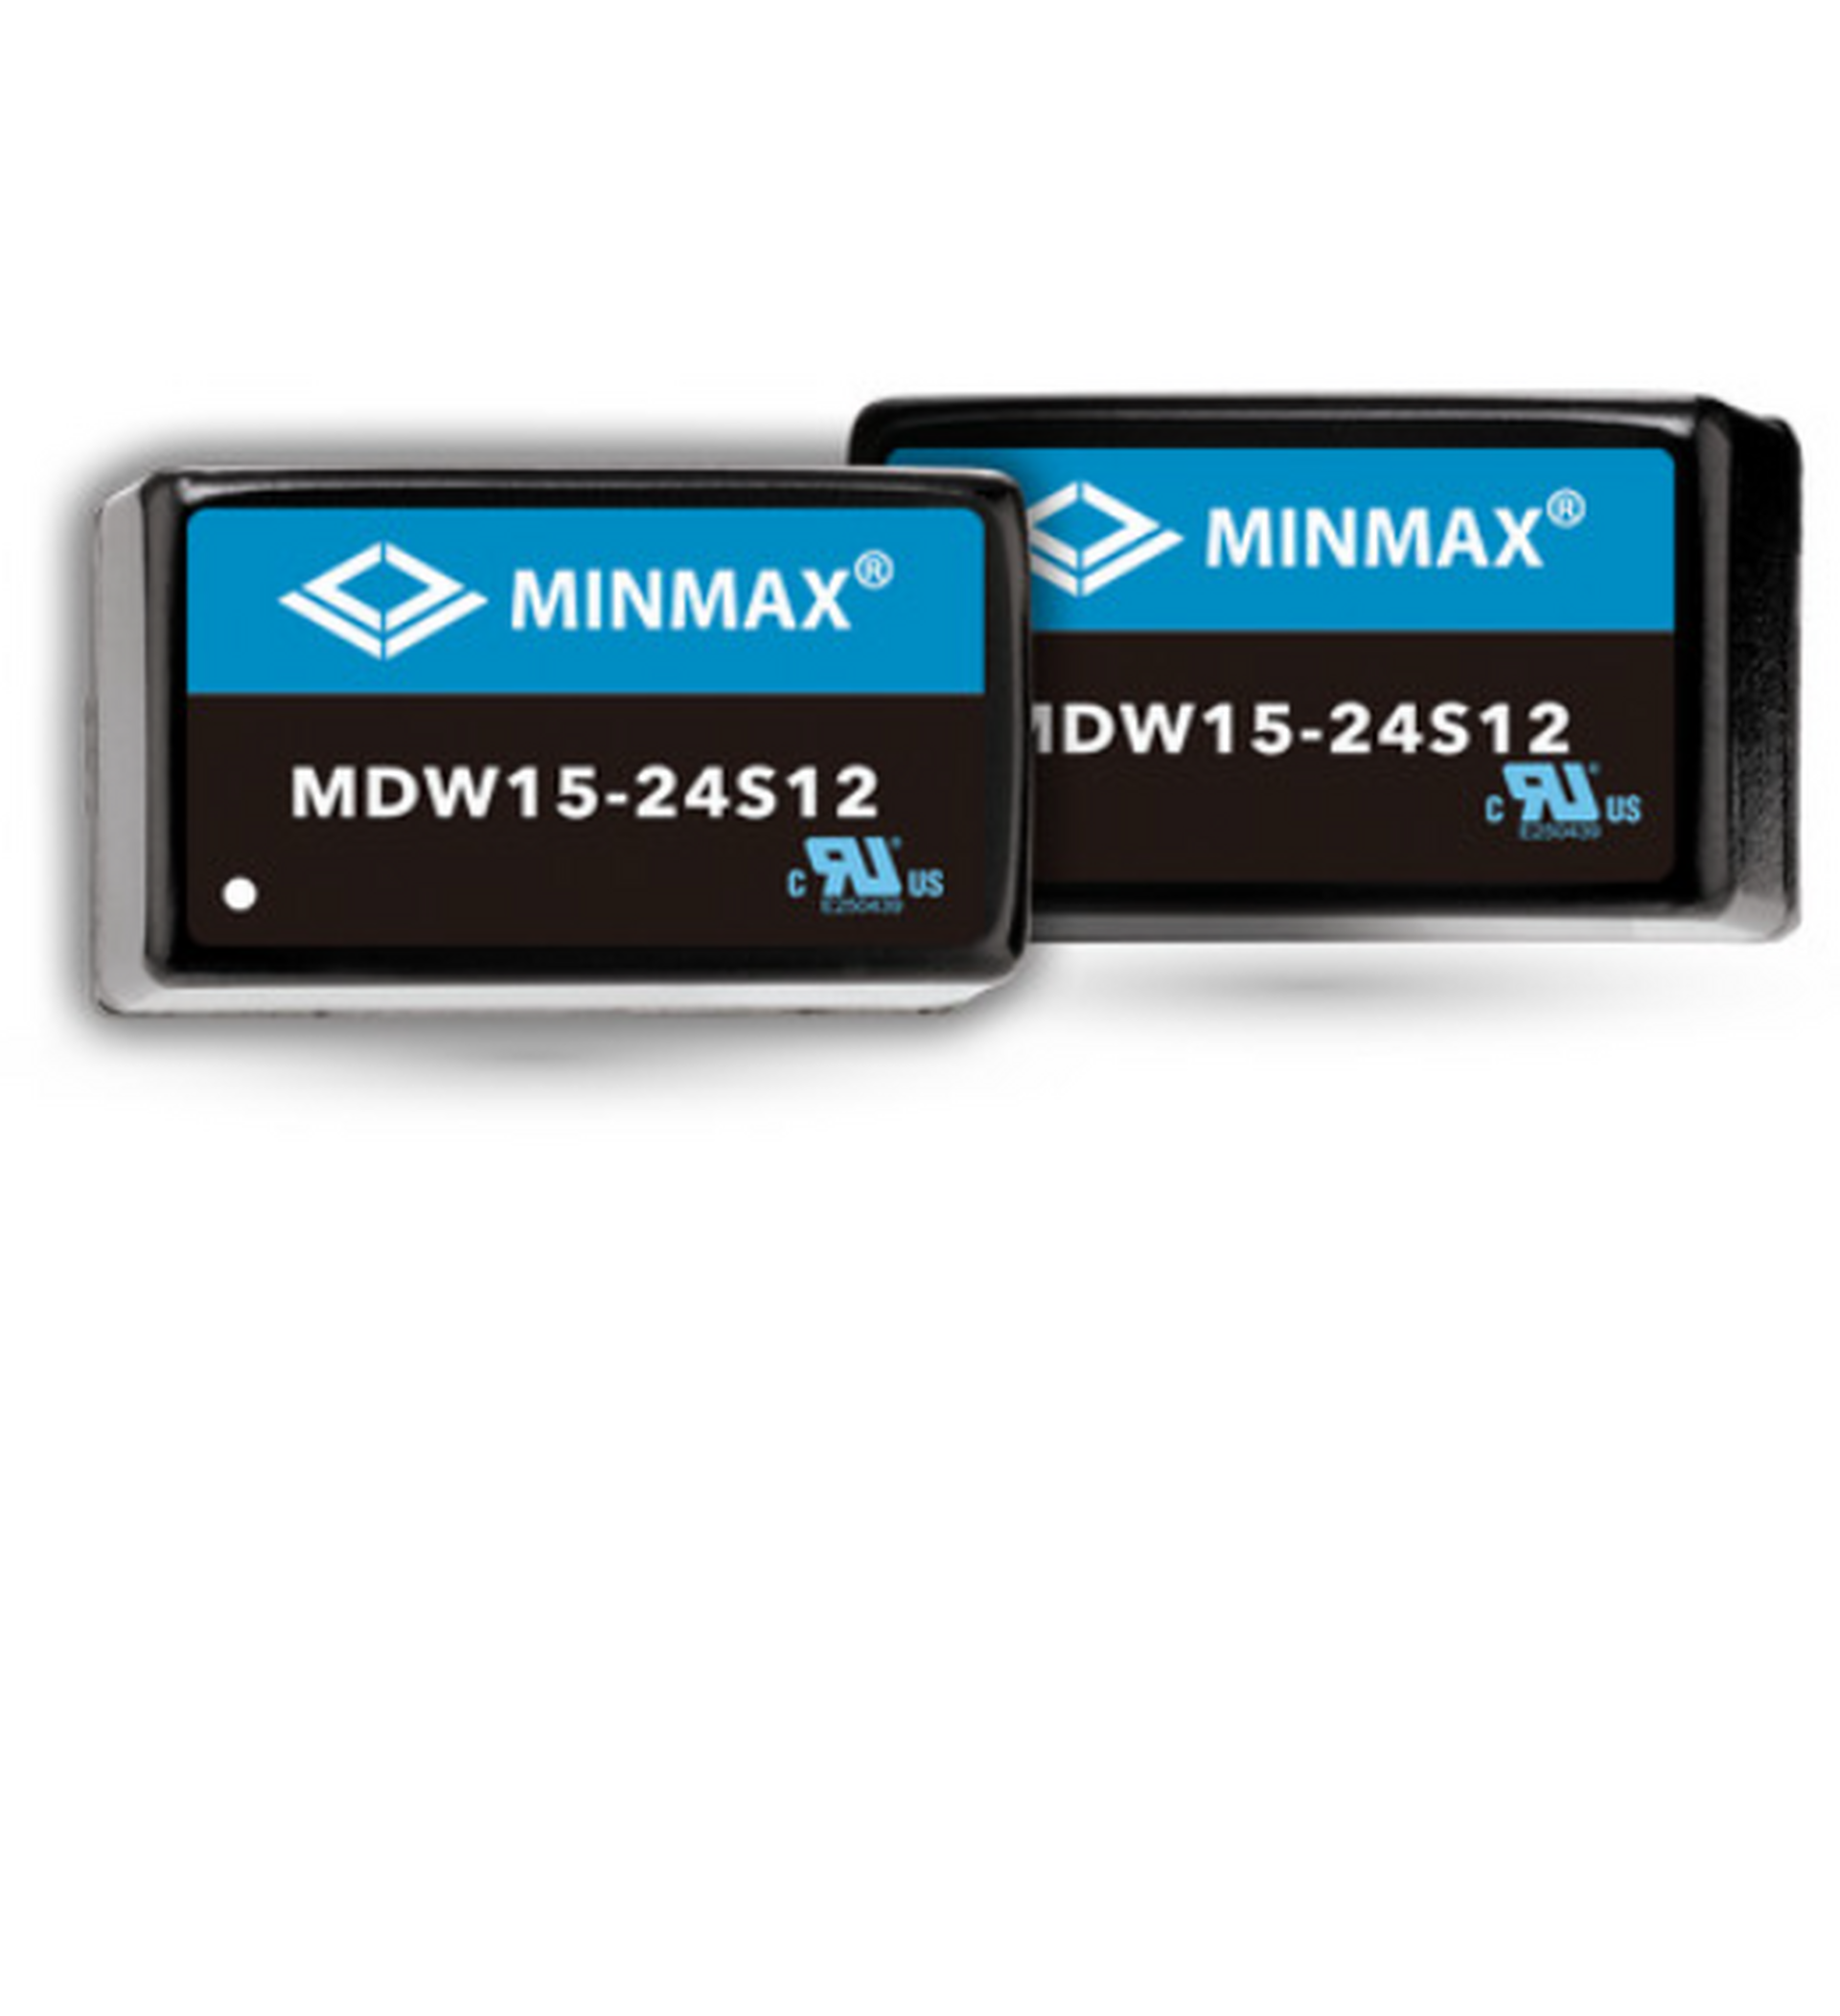 Minmax MDW15